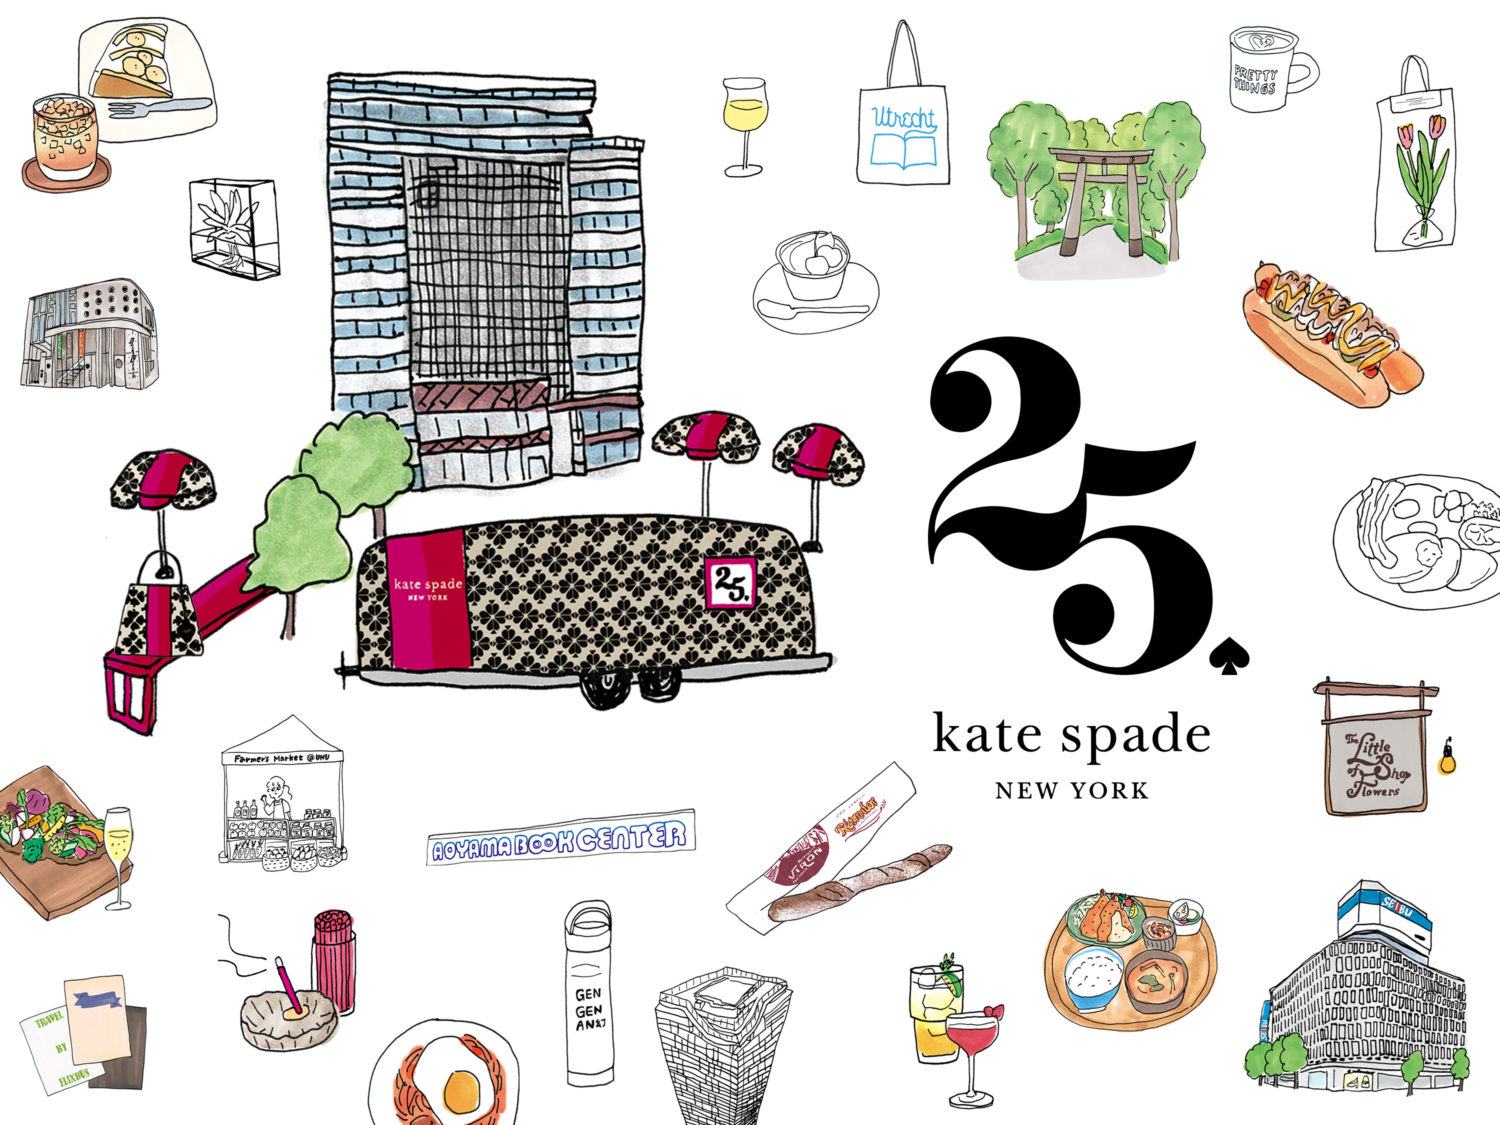 ケイト・スペード ニューヨークは、日本上陸25 周年を記念し、期間限定